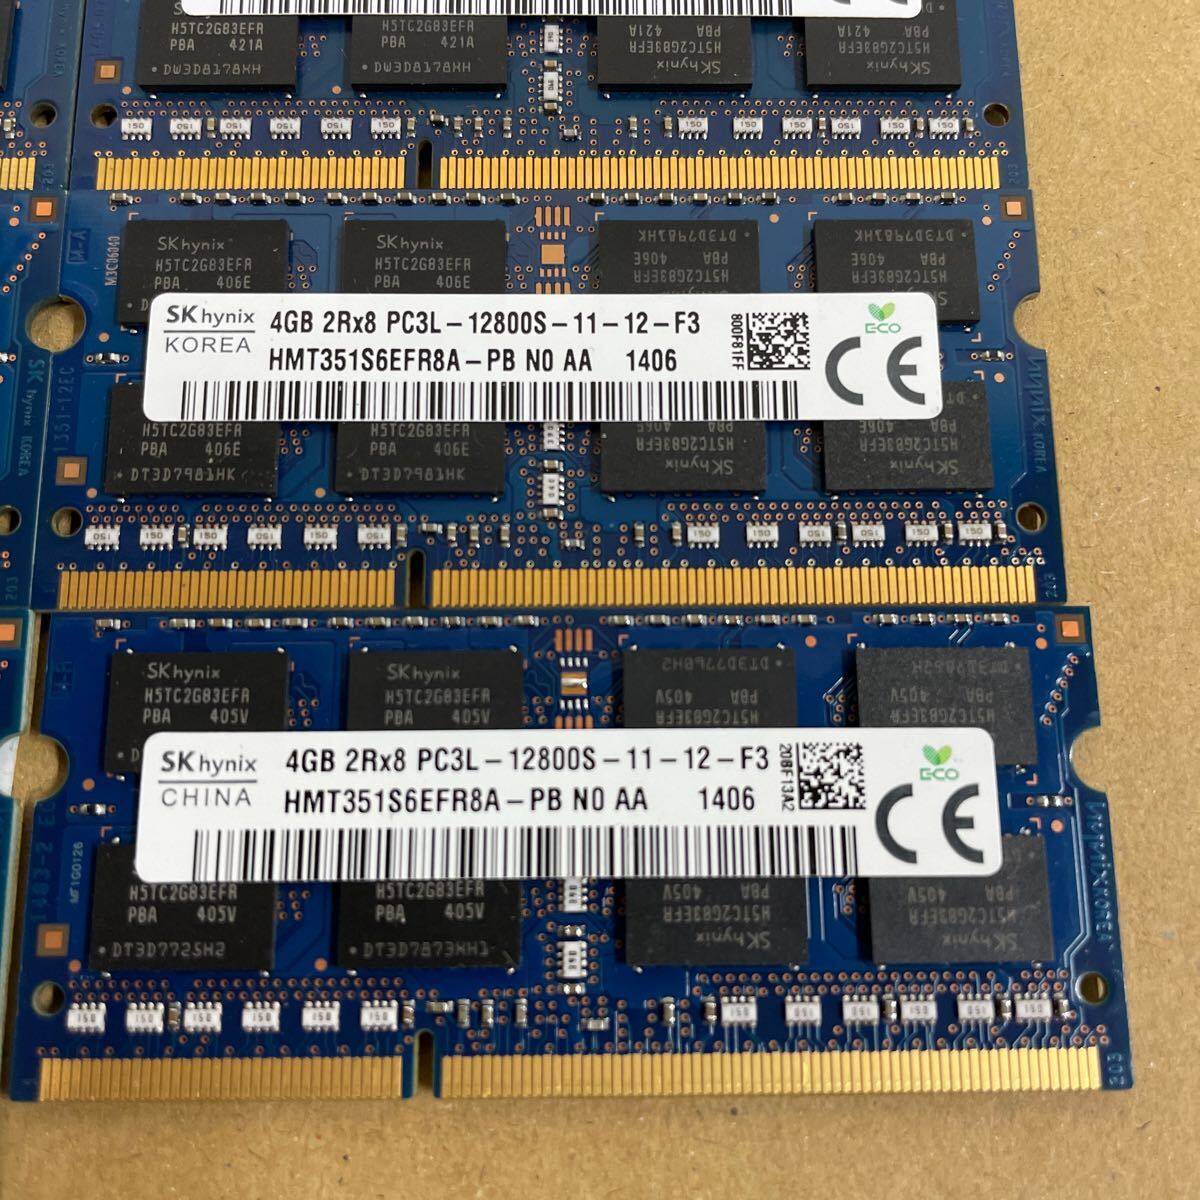 ki98 SKhynix Note PC memory 4GB 2Rx8 PC3L-12800S 9 sheets 